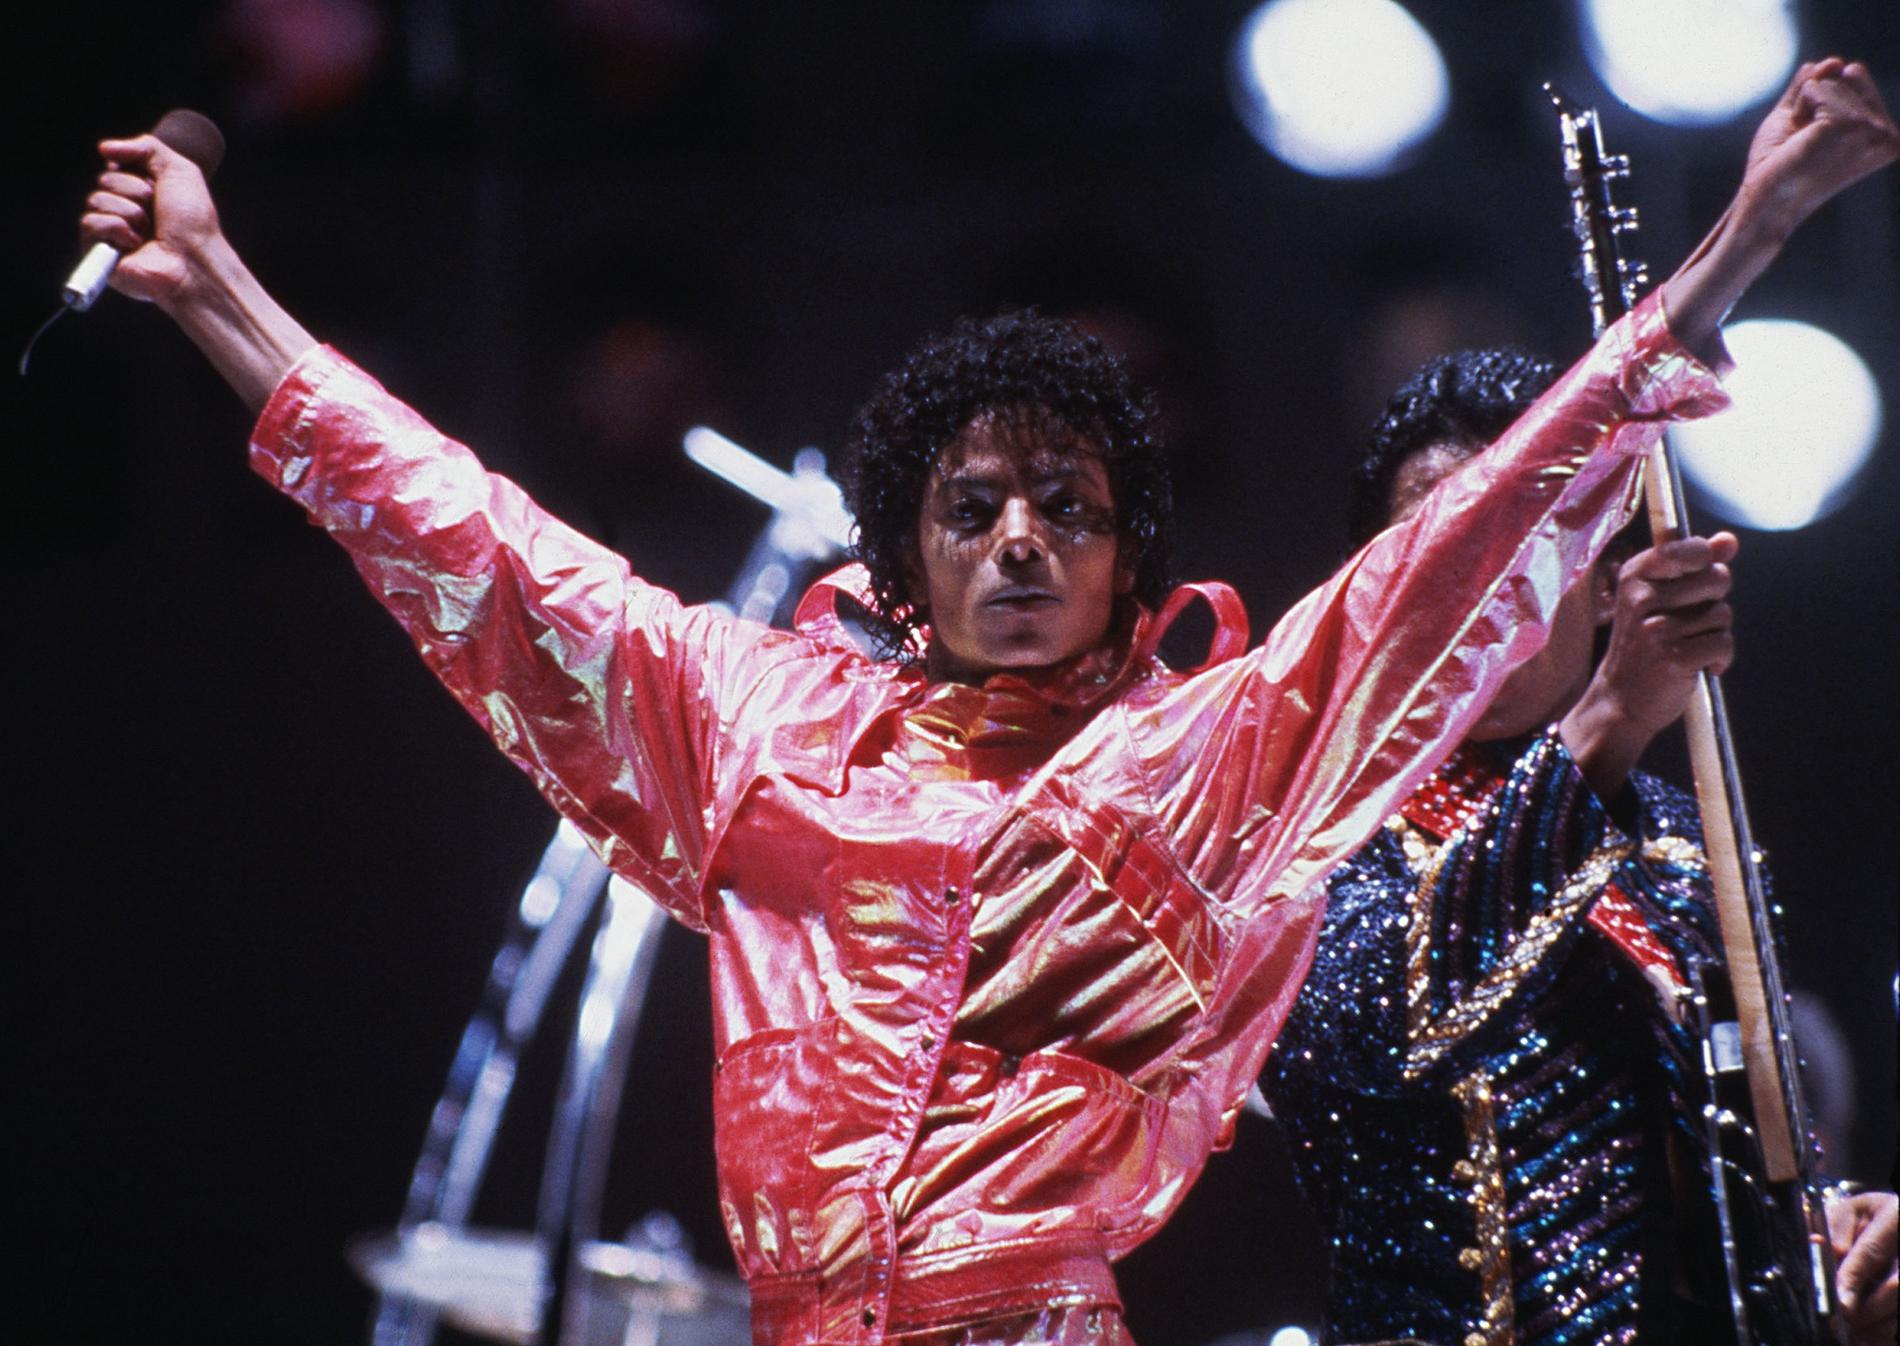 Den framlidne popstjärnan Michael Jackson på scen 1984.